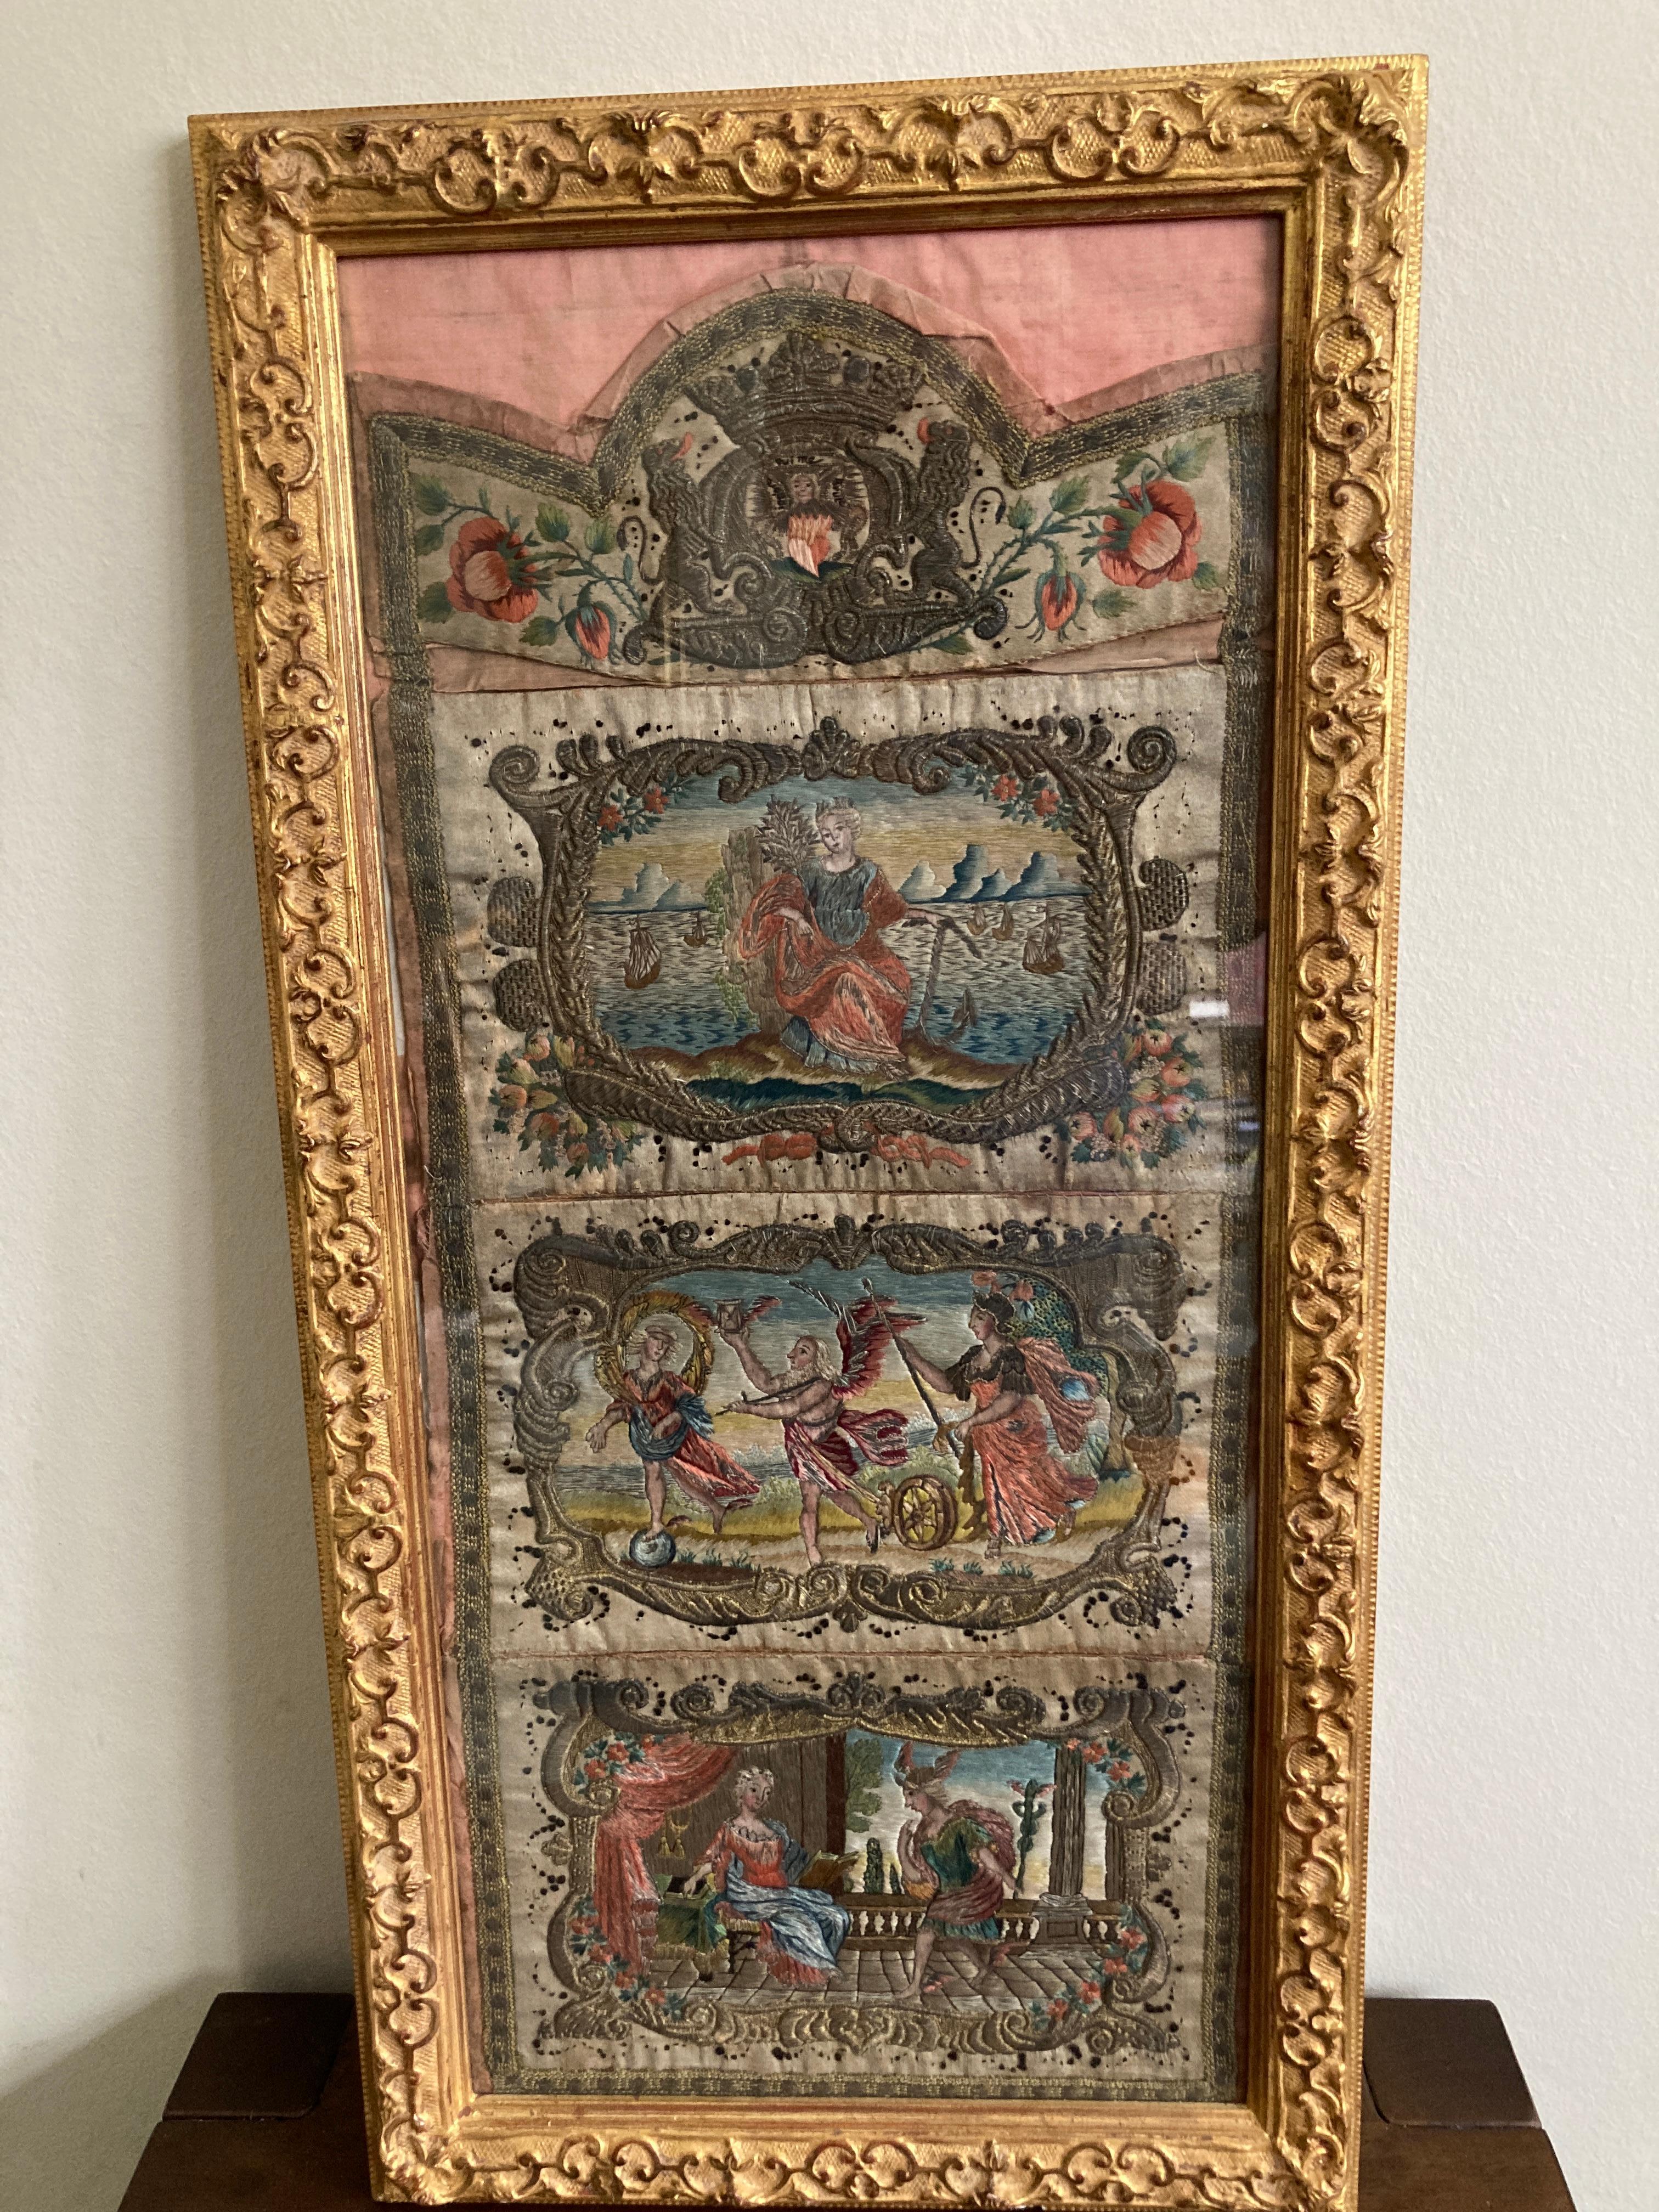 Eine antike Seiden- und Metallfadenstickerei.

Drei figürliche Vignetten aus dem 18. Jahrhundert, die von einem Wappen gekrönt werden, alle aus farbiger Seide und mit Metallfadenborten. Die etwas schwerfälligen C- und S-Rollen in Metallfäden